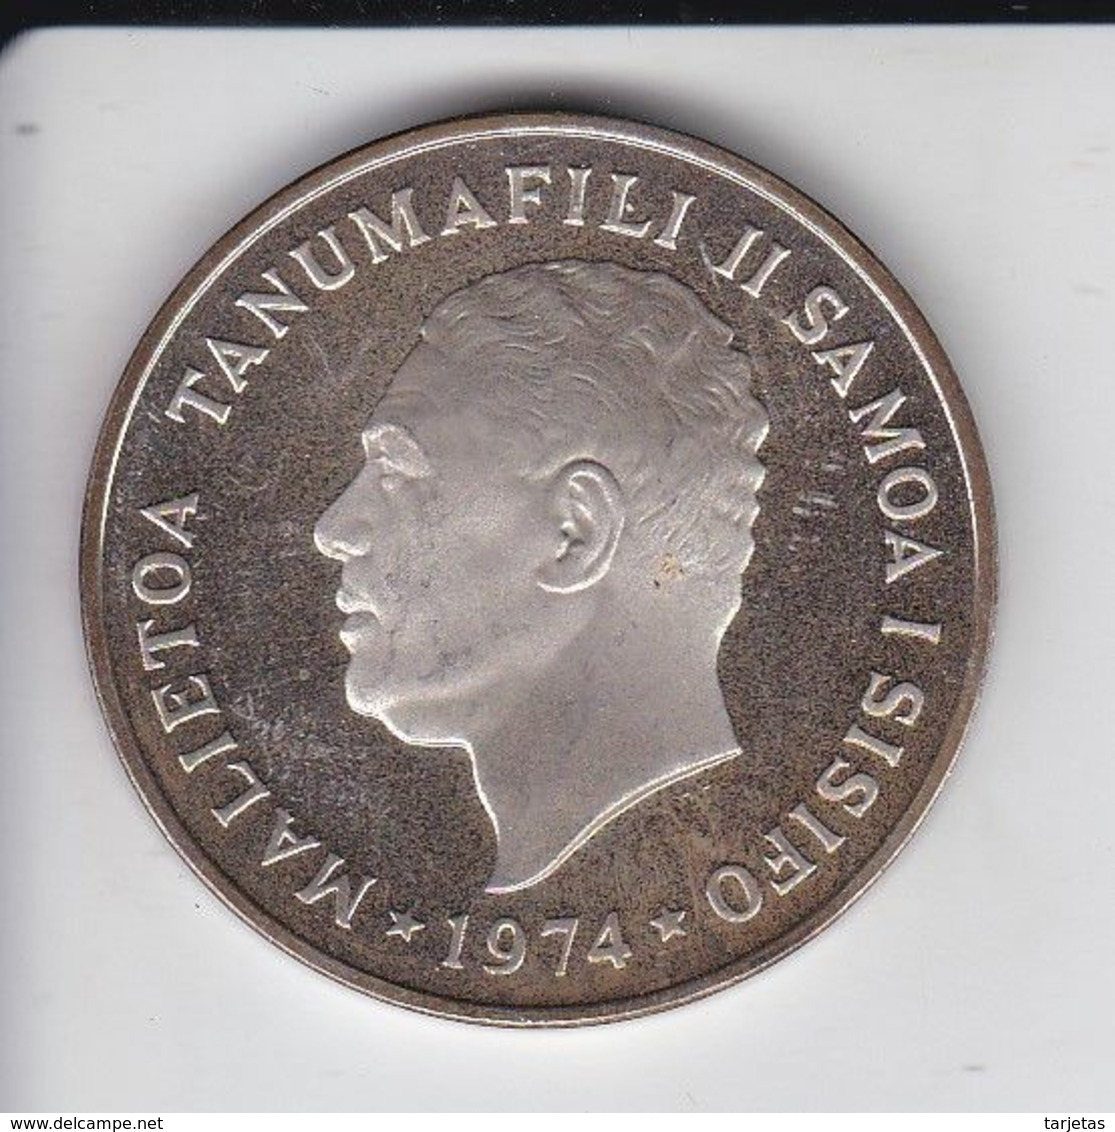 MONEDA  DE PLATA DE SAMOA DE 1 DOLLAR DEL AÑO 1974  (COIN) SILVER-ARGENT - Samoa